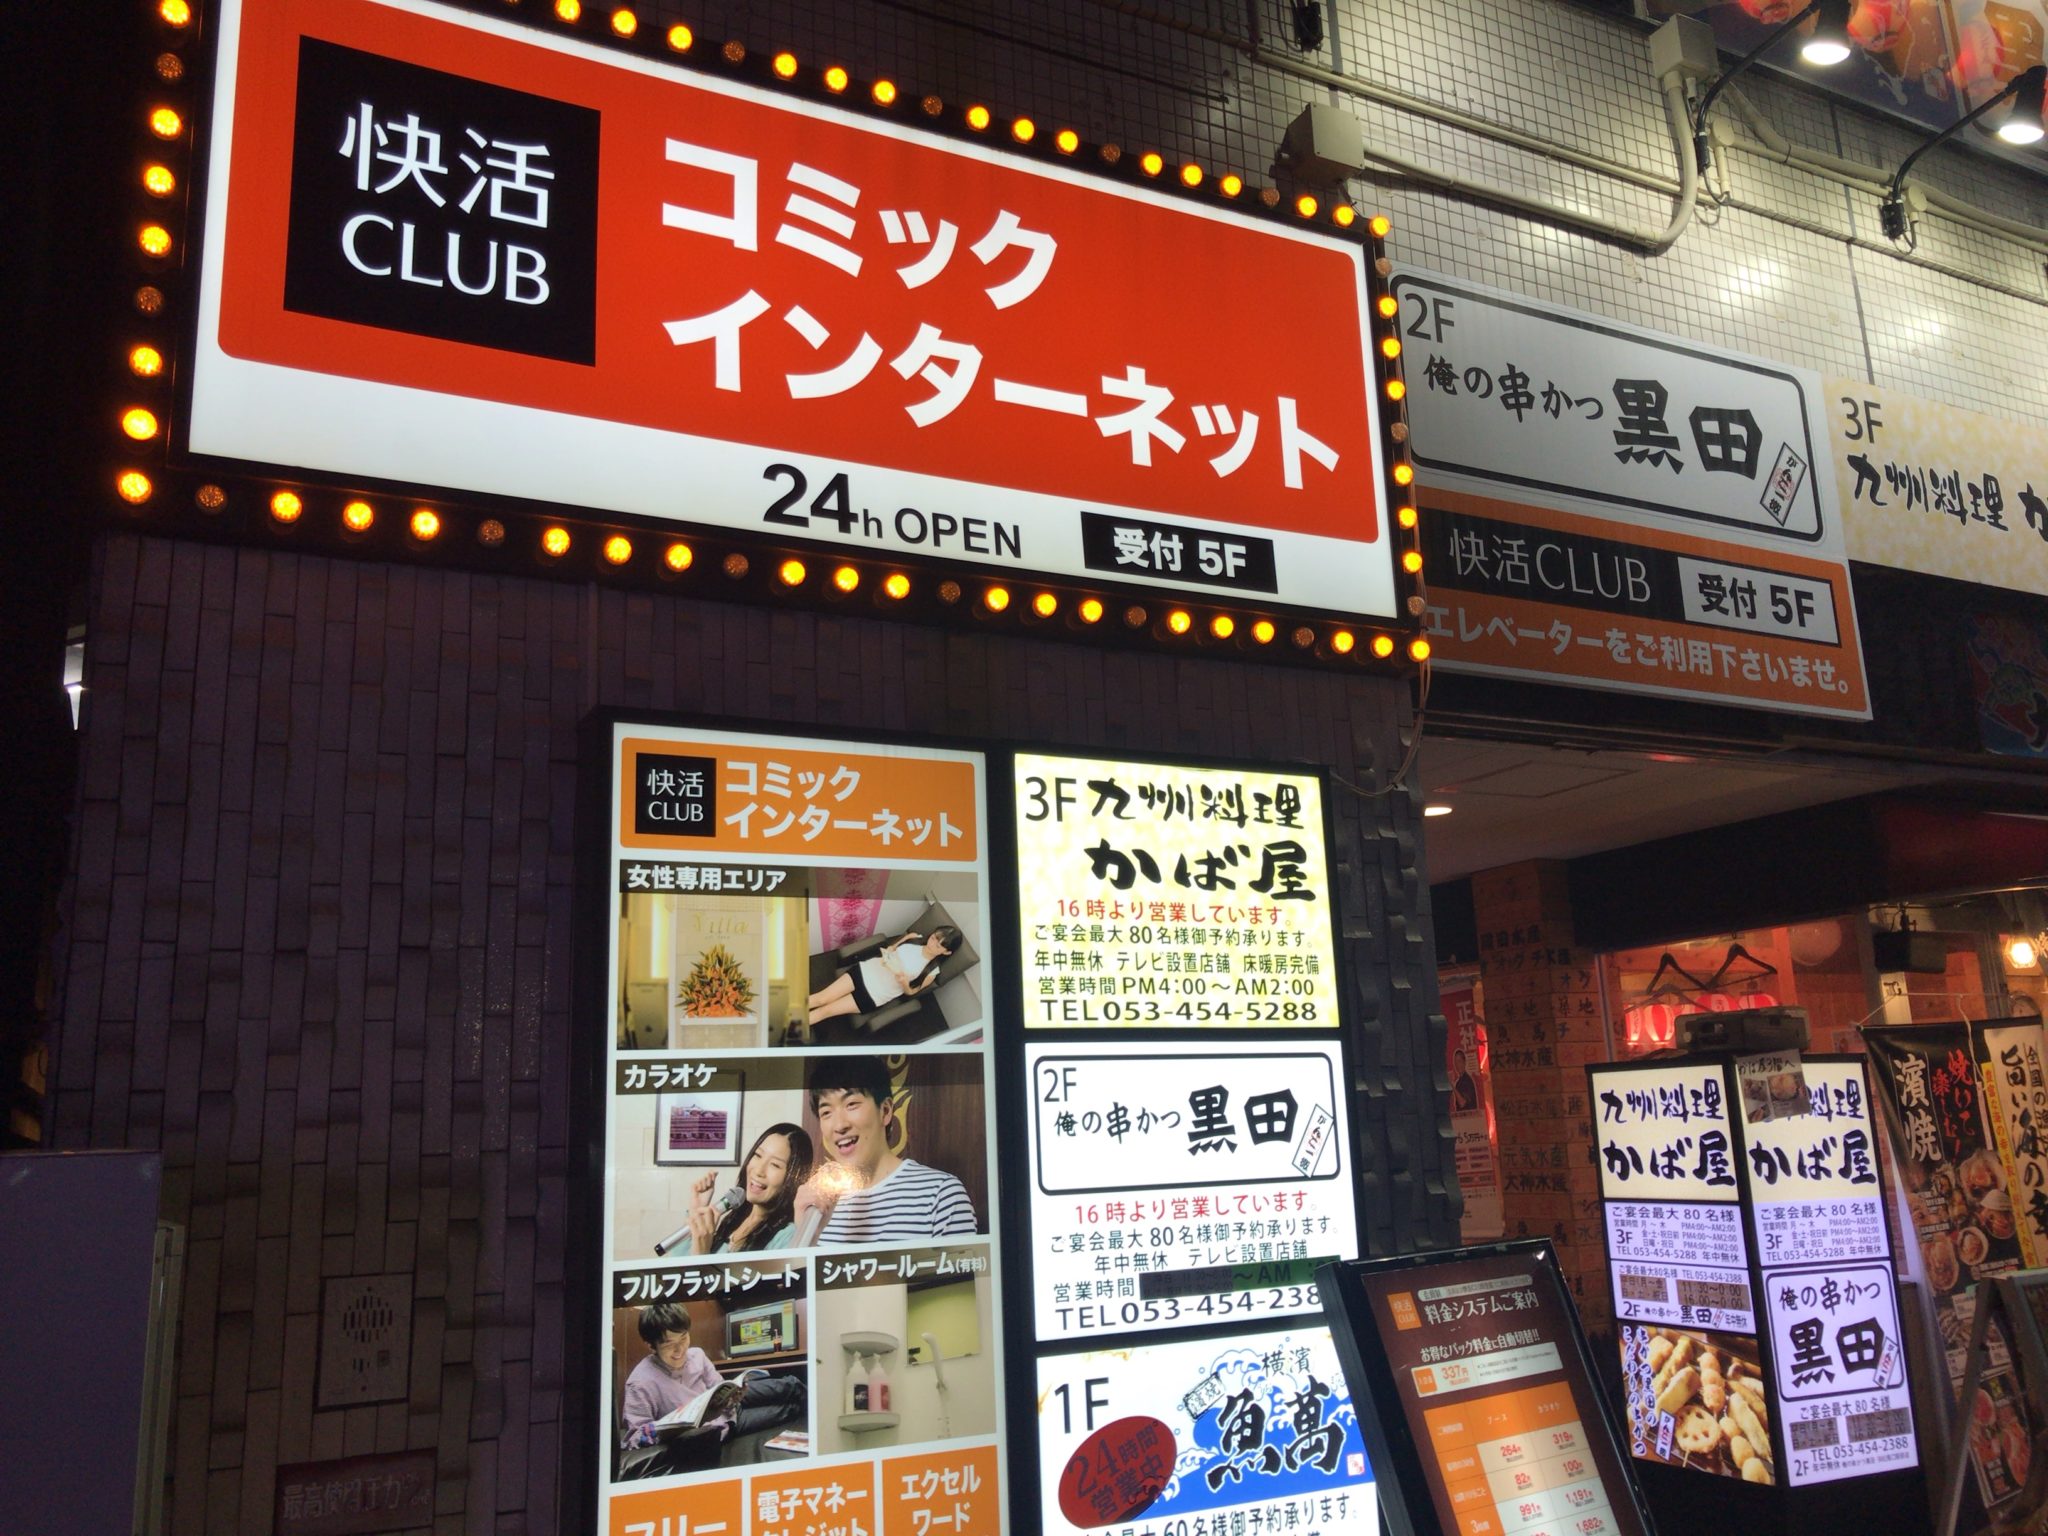 浜松駅から徒歩1分 快活クラブ 浜松南口駅前店をレポート 日本全国のネカフェ 漫画喫茶マップのヒマップ